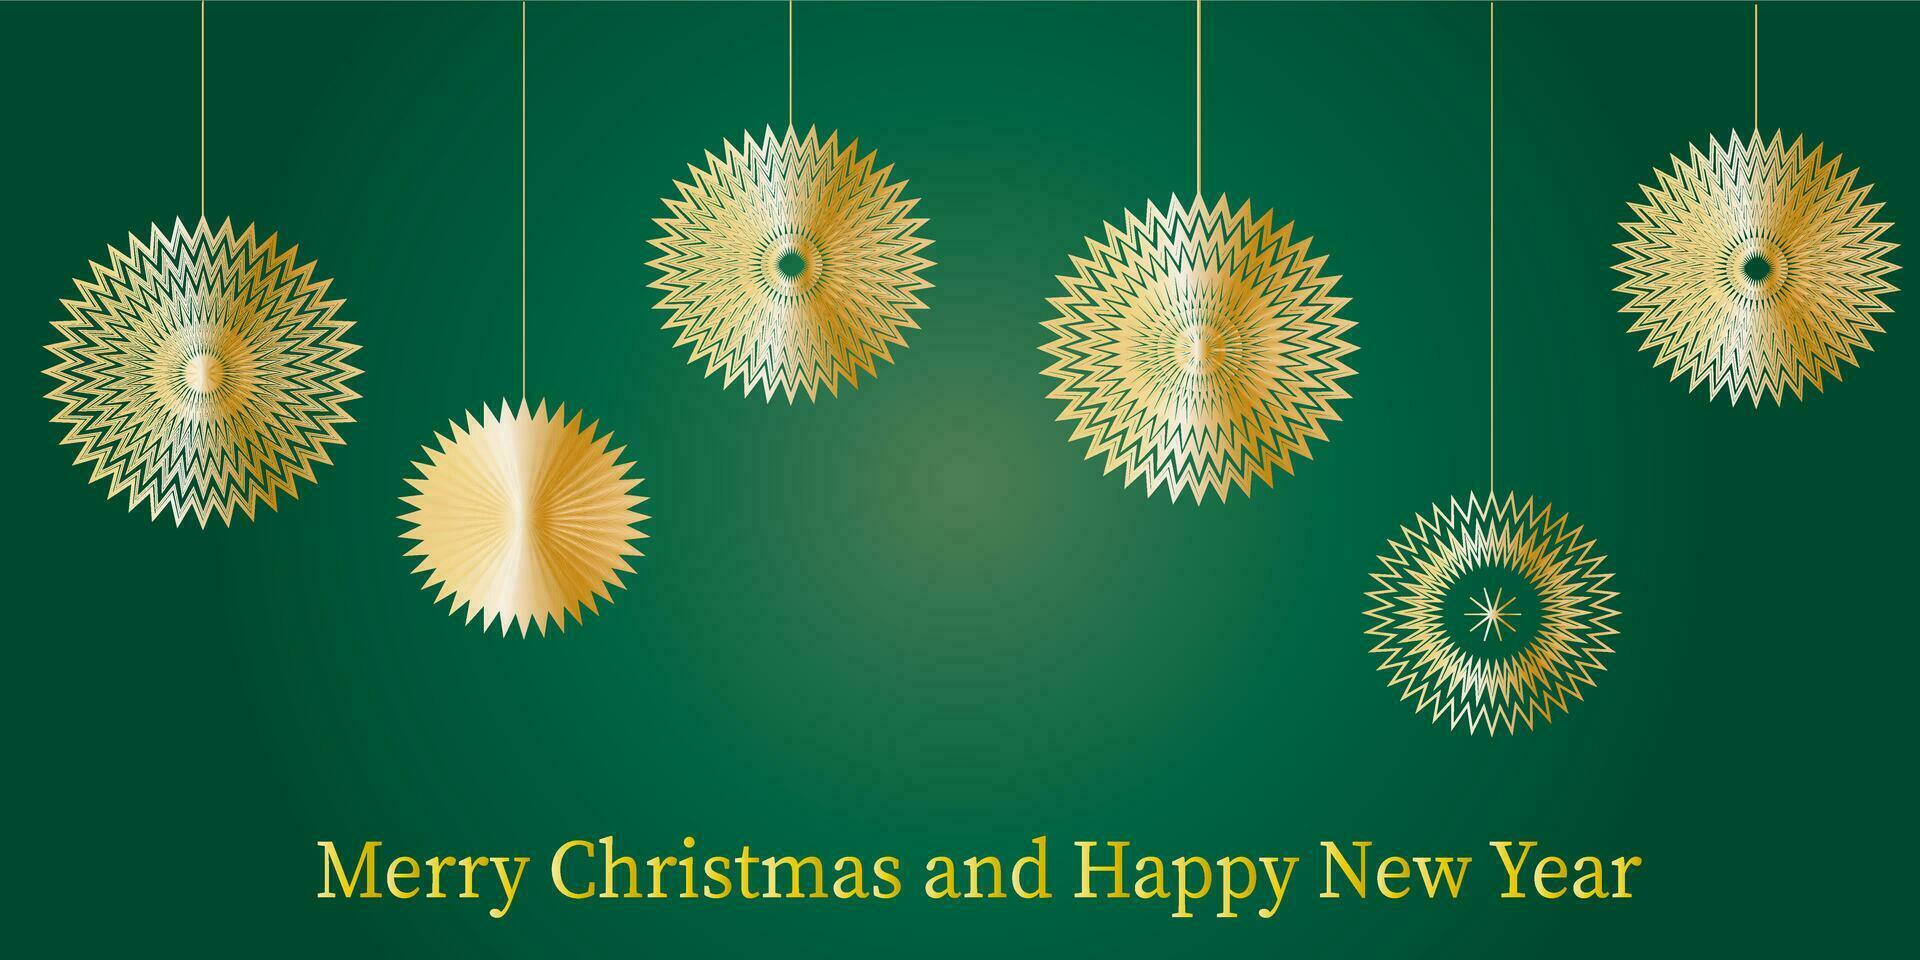 alegre Navidad y nuevo año verde modelo dorado copos de nieve Navidad elementos. vector eps10